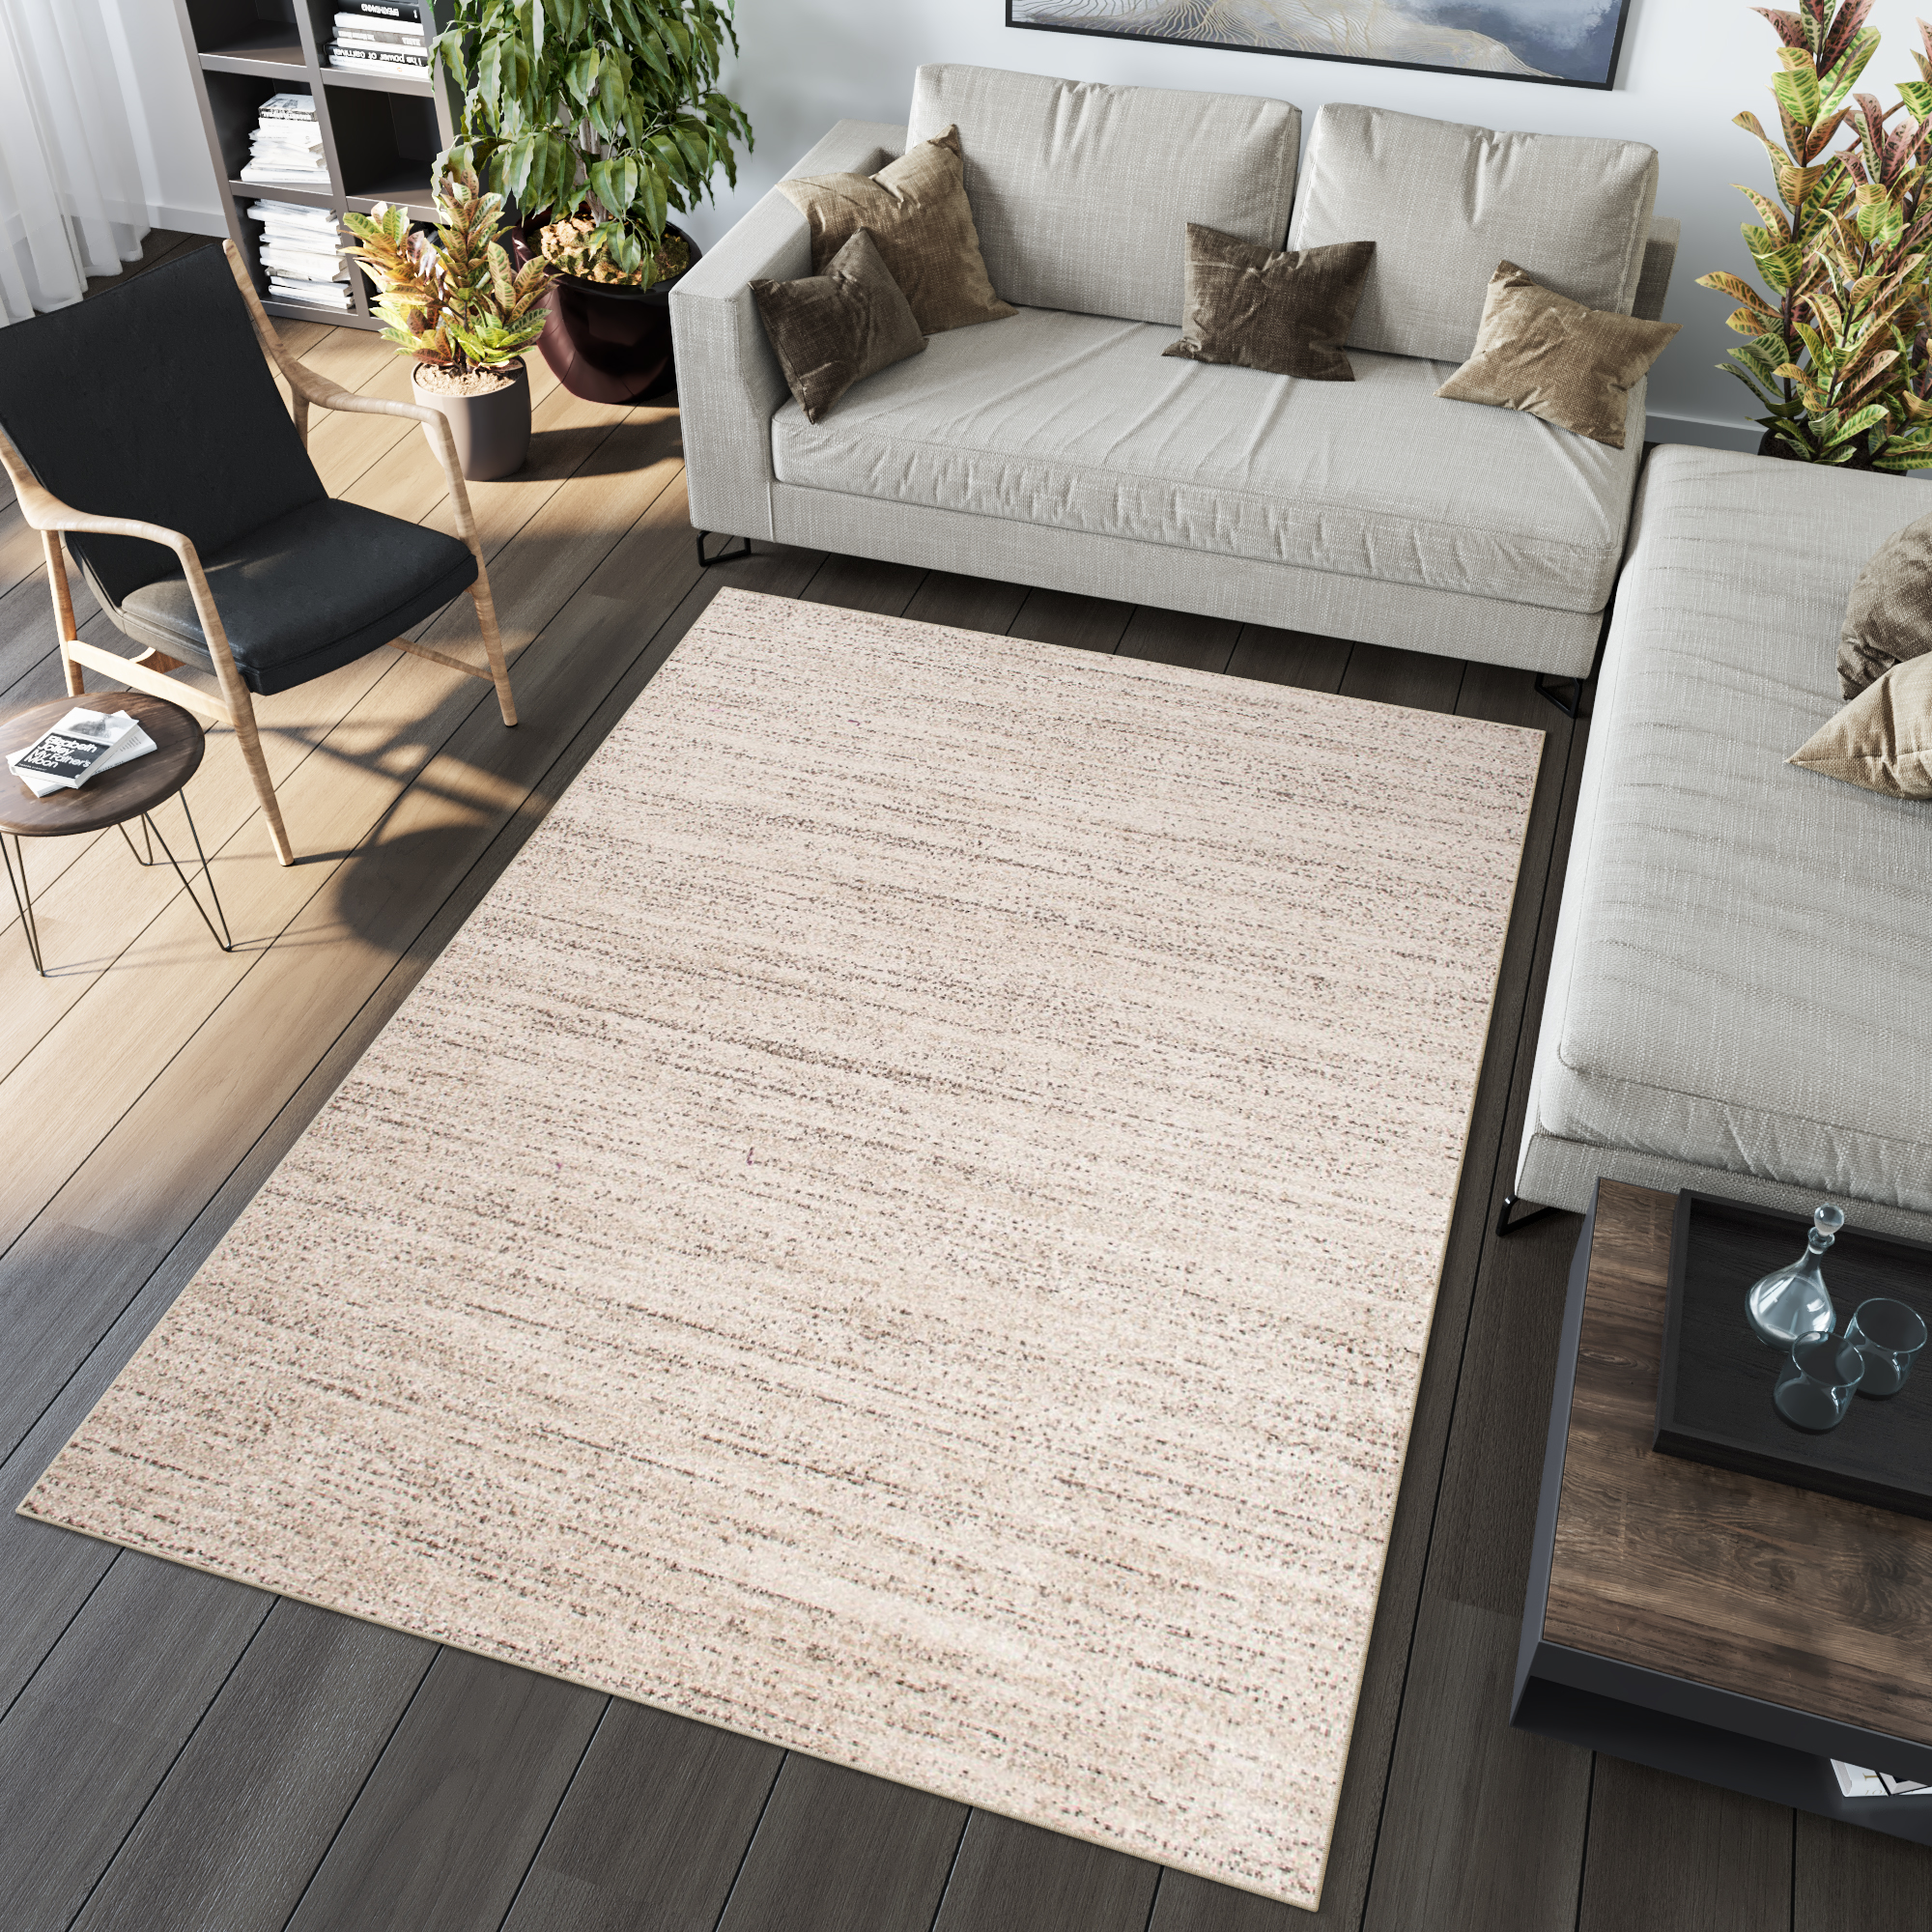 Kurzflor Teppich Modern Design Teppiche Beige Creme Meliert Verwischt  Wohnzimmer | eBay